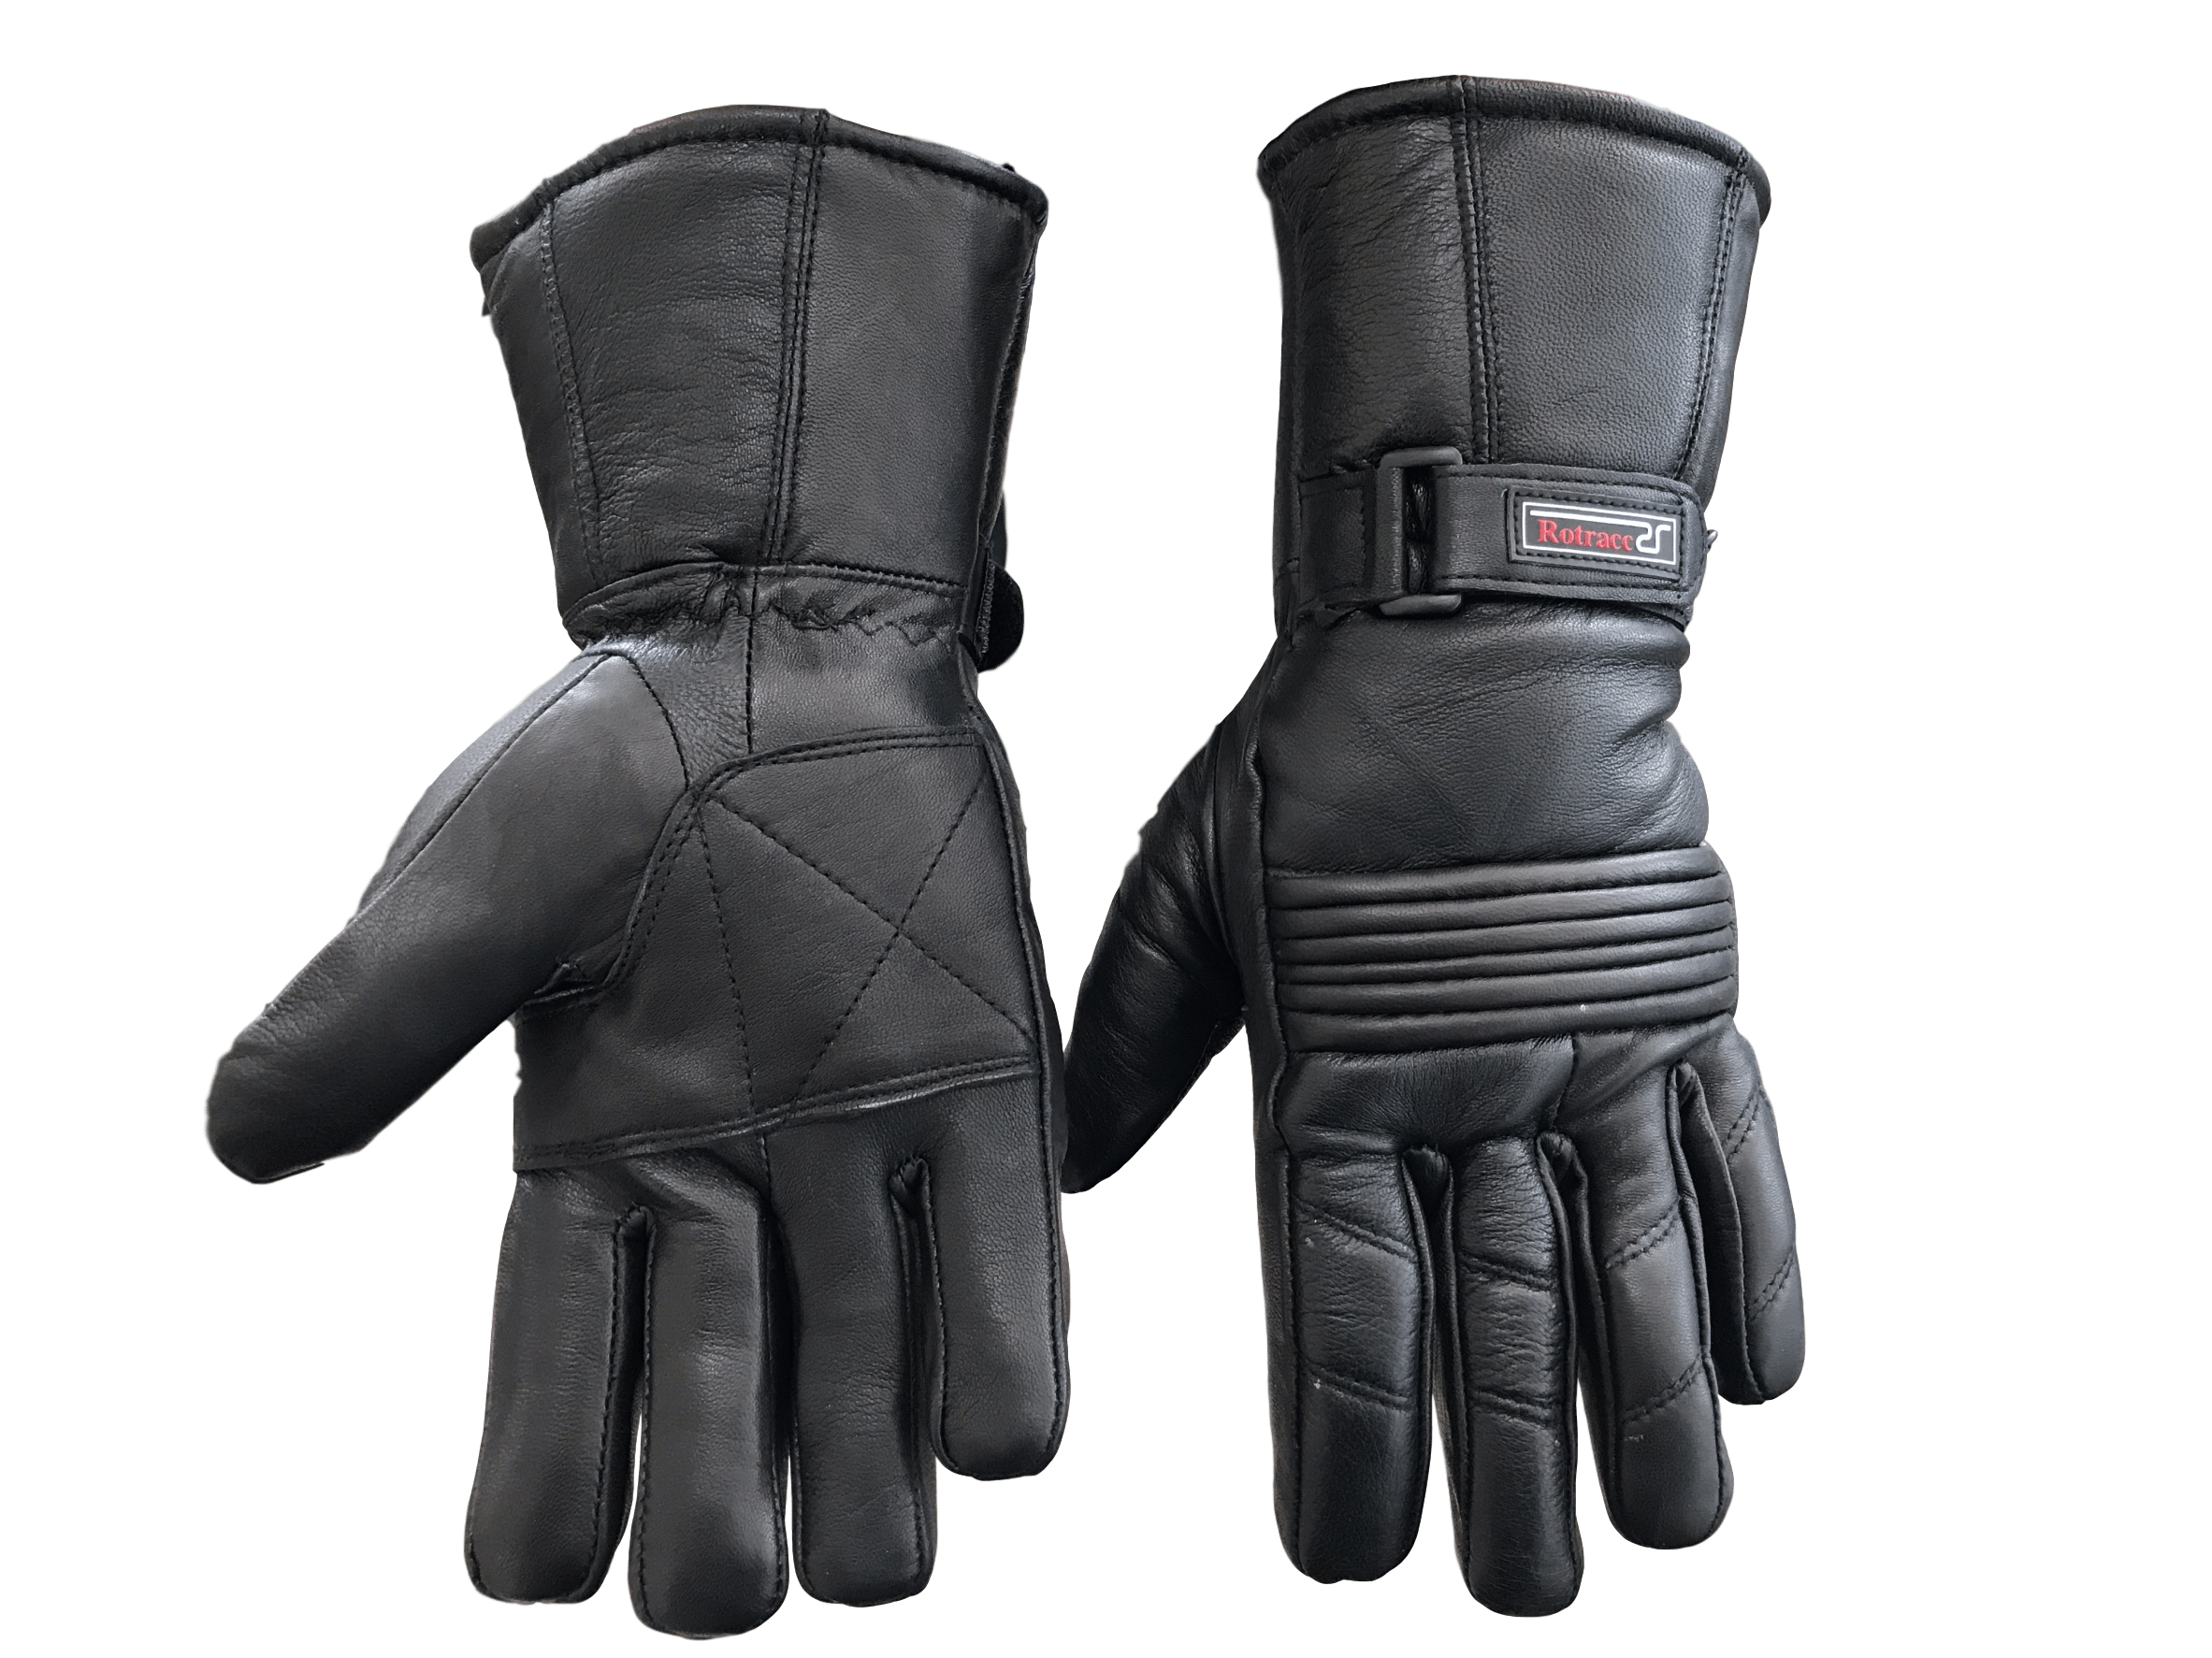 MC Auto: Rotracc Leather Winter Gloves